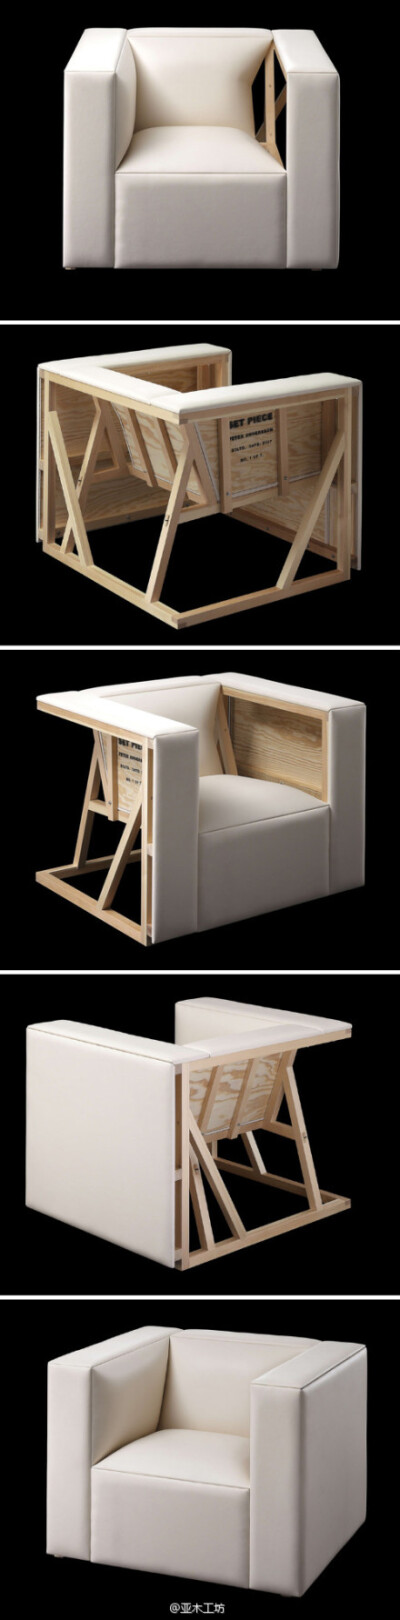 手工制作的单人沙发,独特的构思展示了沙发内部的松木结构,by swede